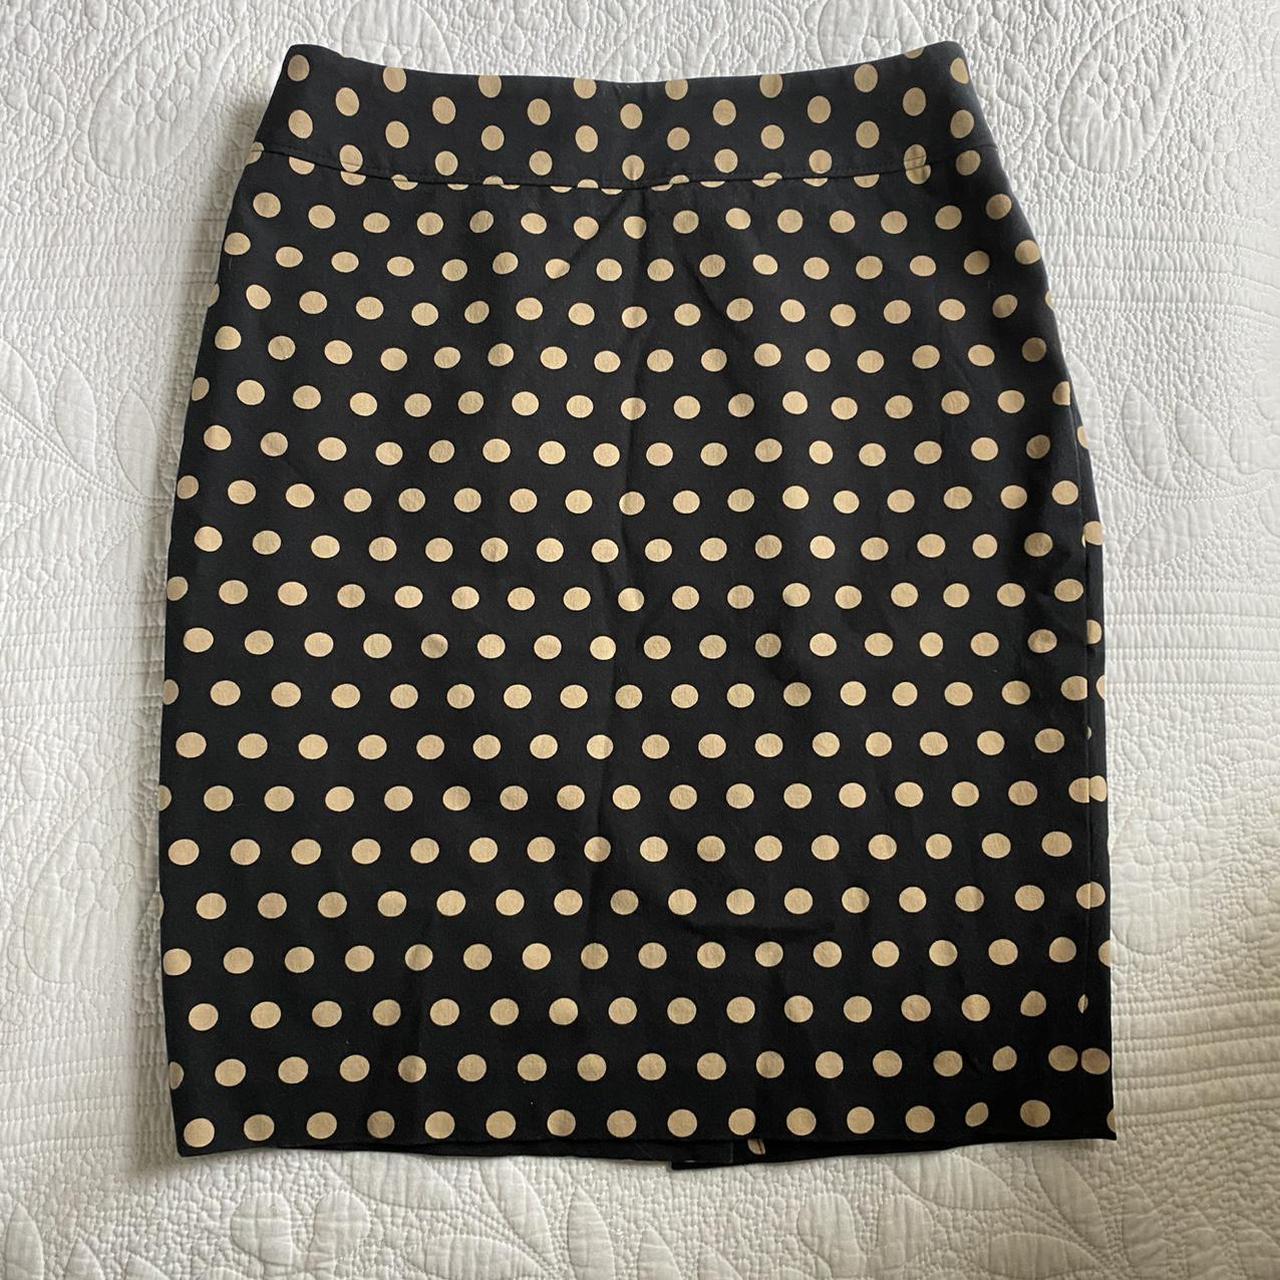 Product Image 1 - The Blair Waldorf Skirt

Y2K Polka